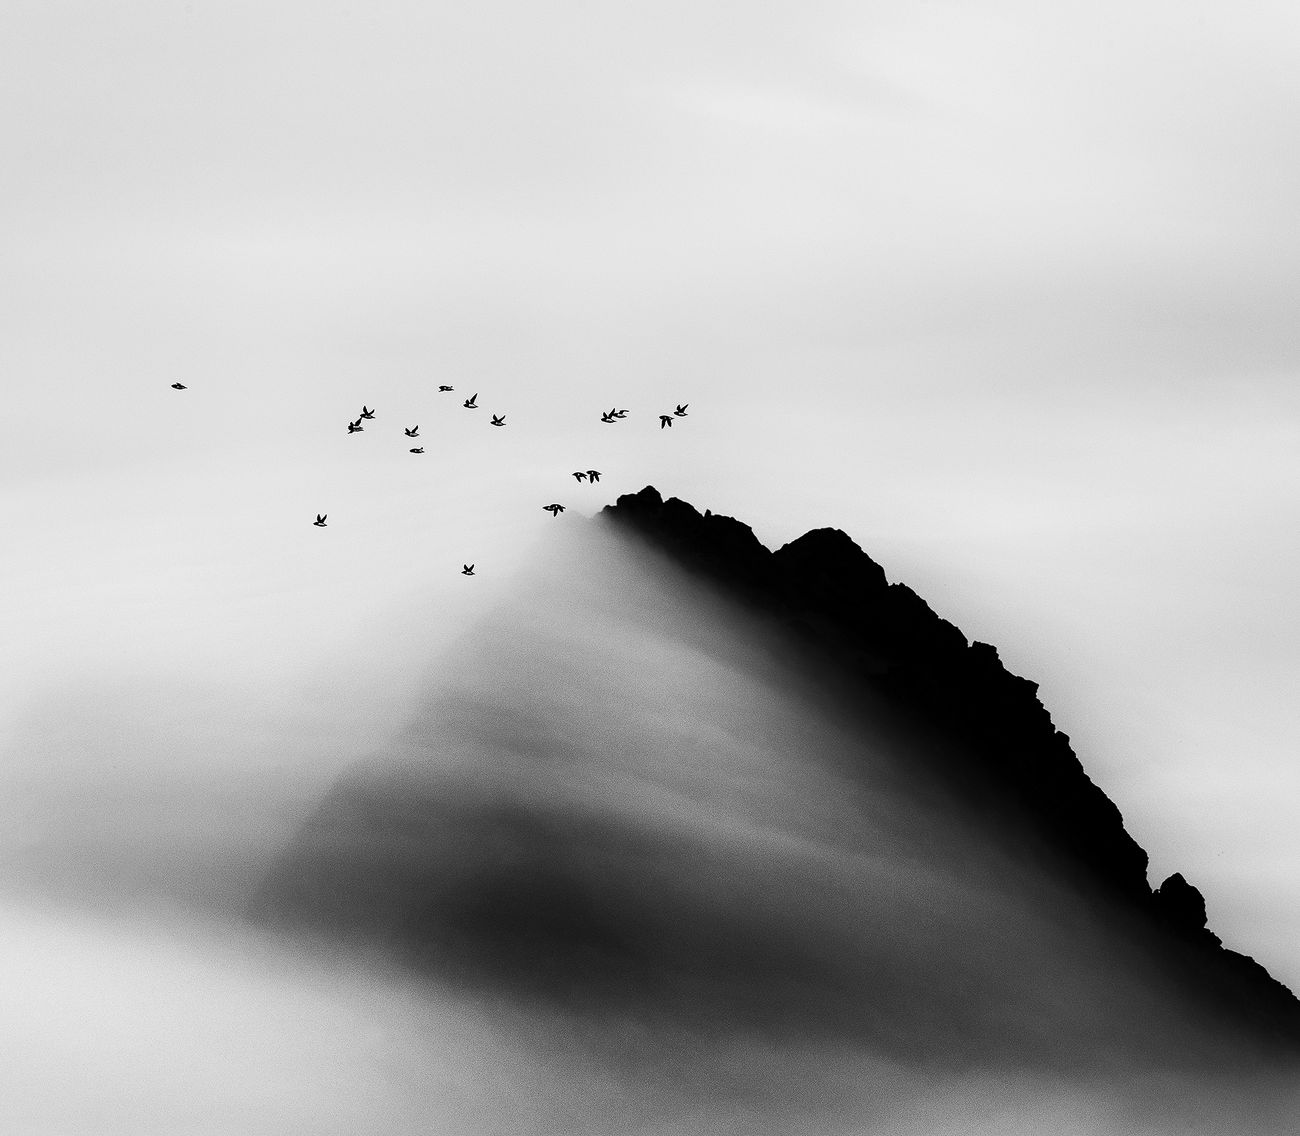 Carsten Egevang © Thule, Groenlandia, 2014